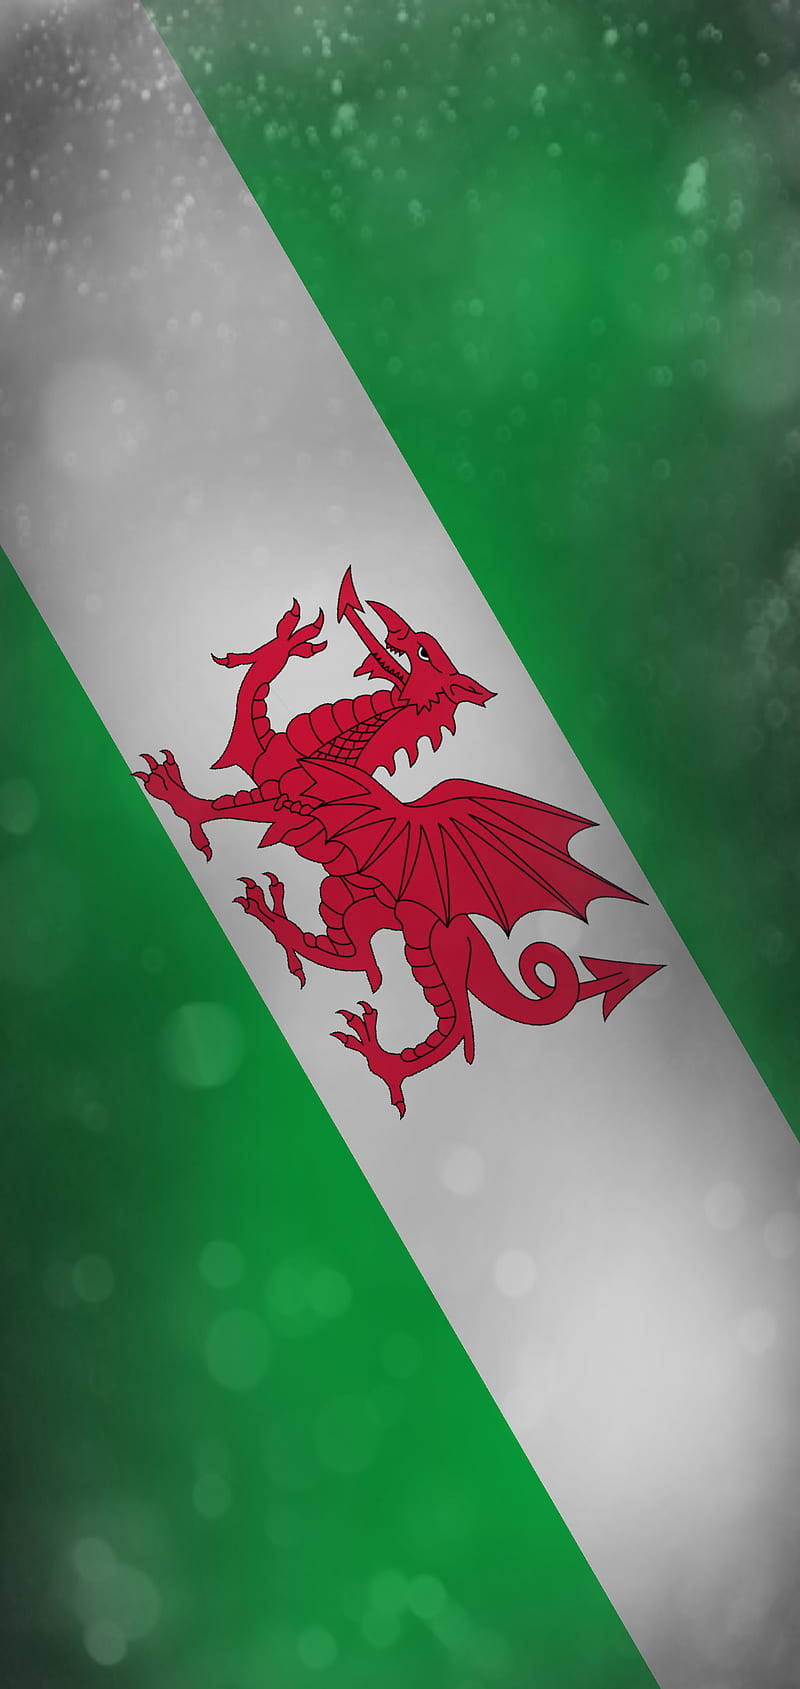 Diagonalesporträt Der Walisischen Nationalmannschaftsflagge Wallpaper